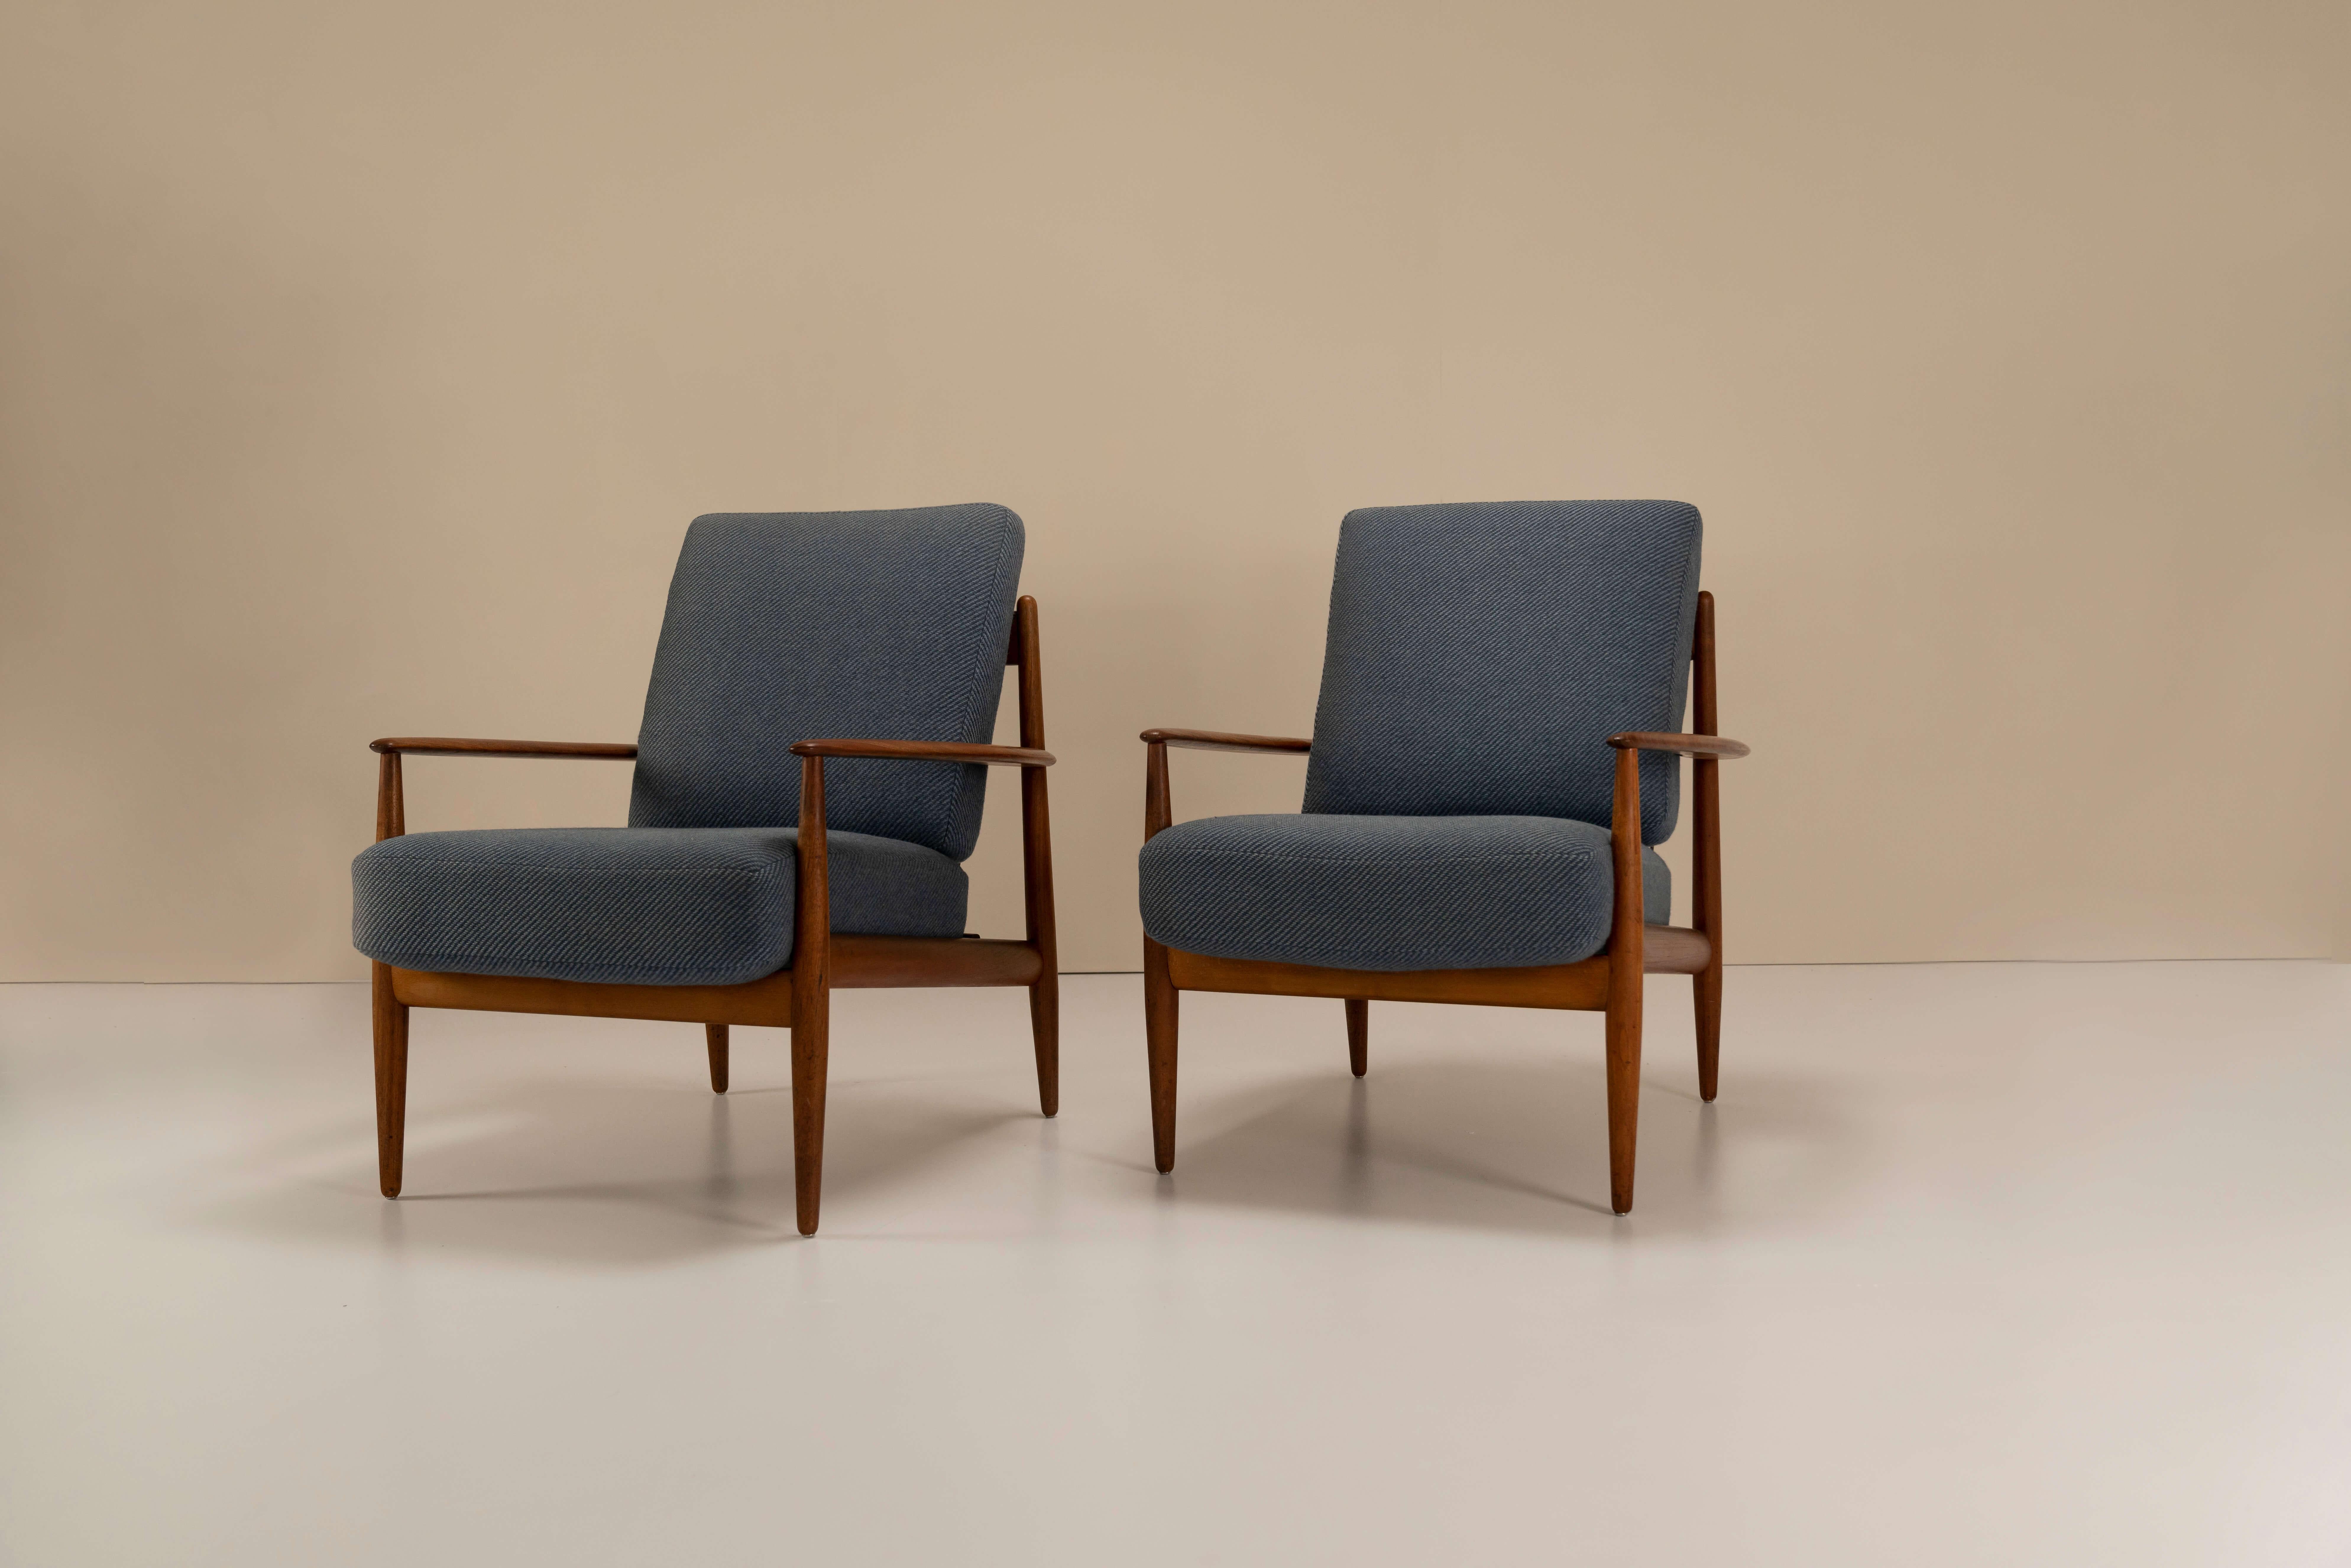 Mid-20th Century Pair of Grete Jalk Model 118 armchairs in Teak for France & Daverkosen, 1950s For Sale